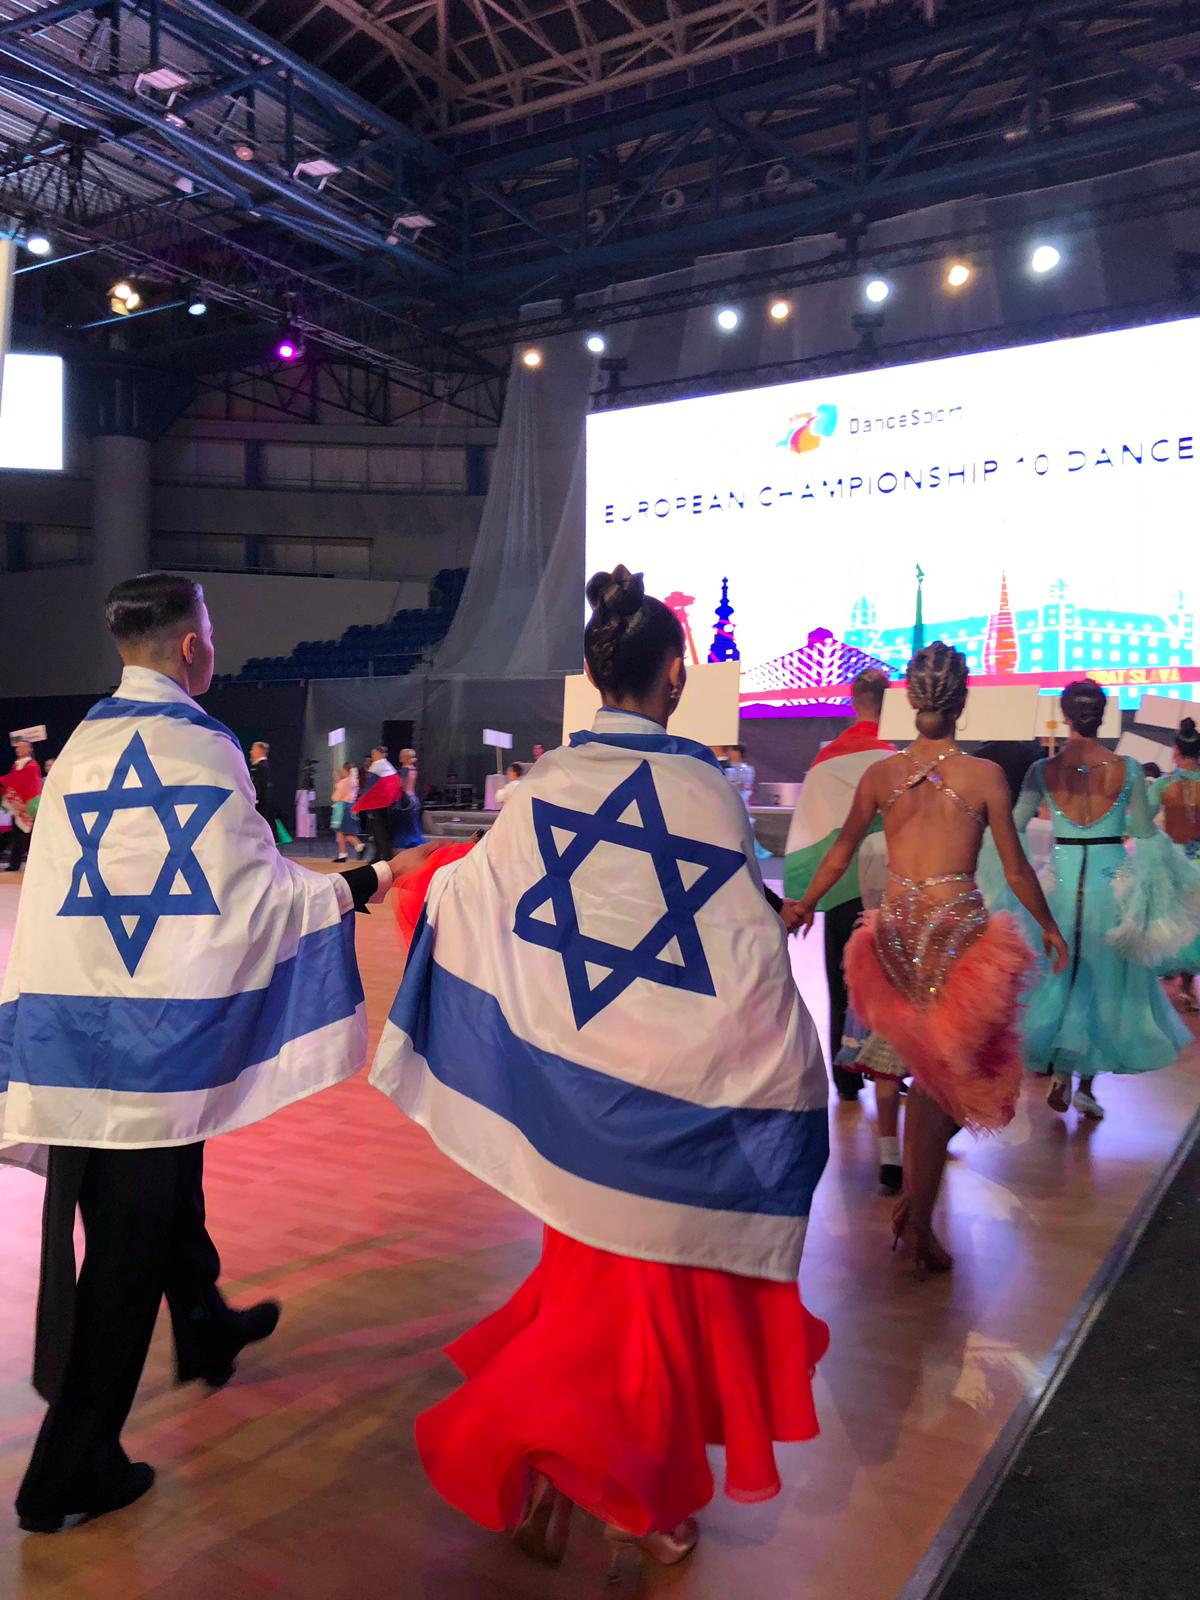 צמד רקדנים מקריית ים ייצגו את ישראל באליפות העולם